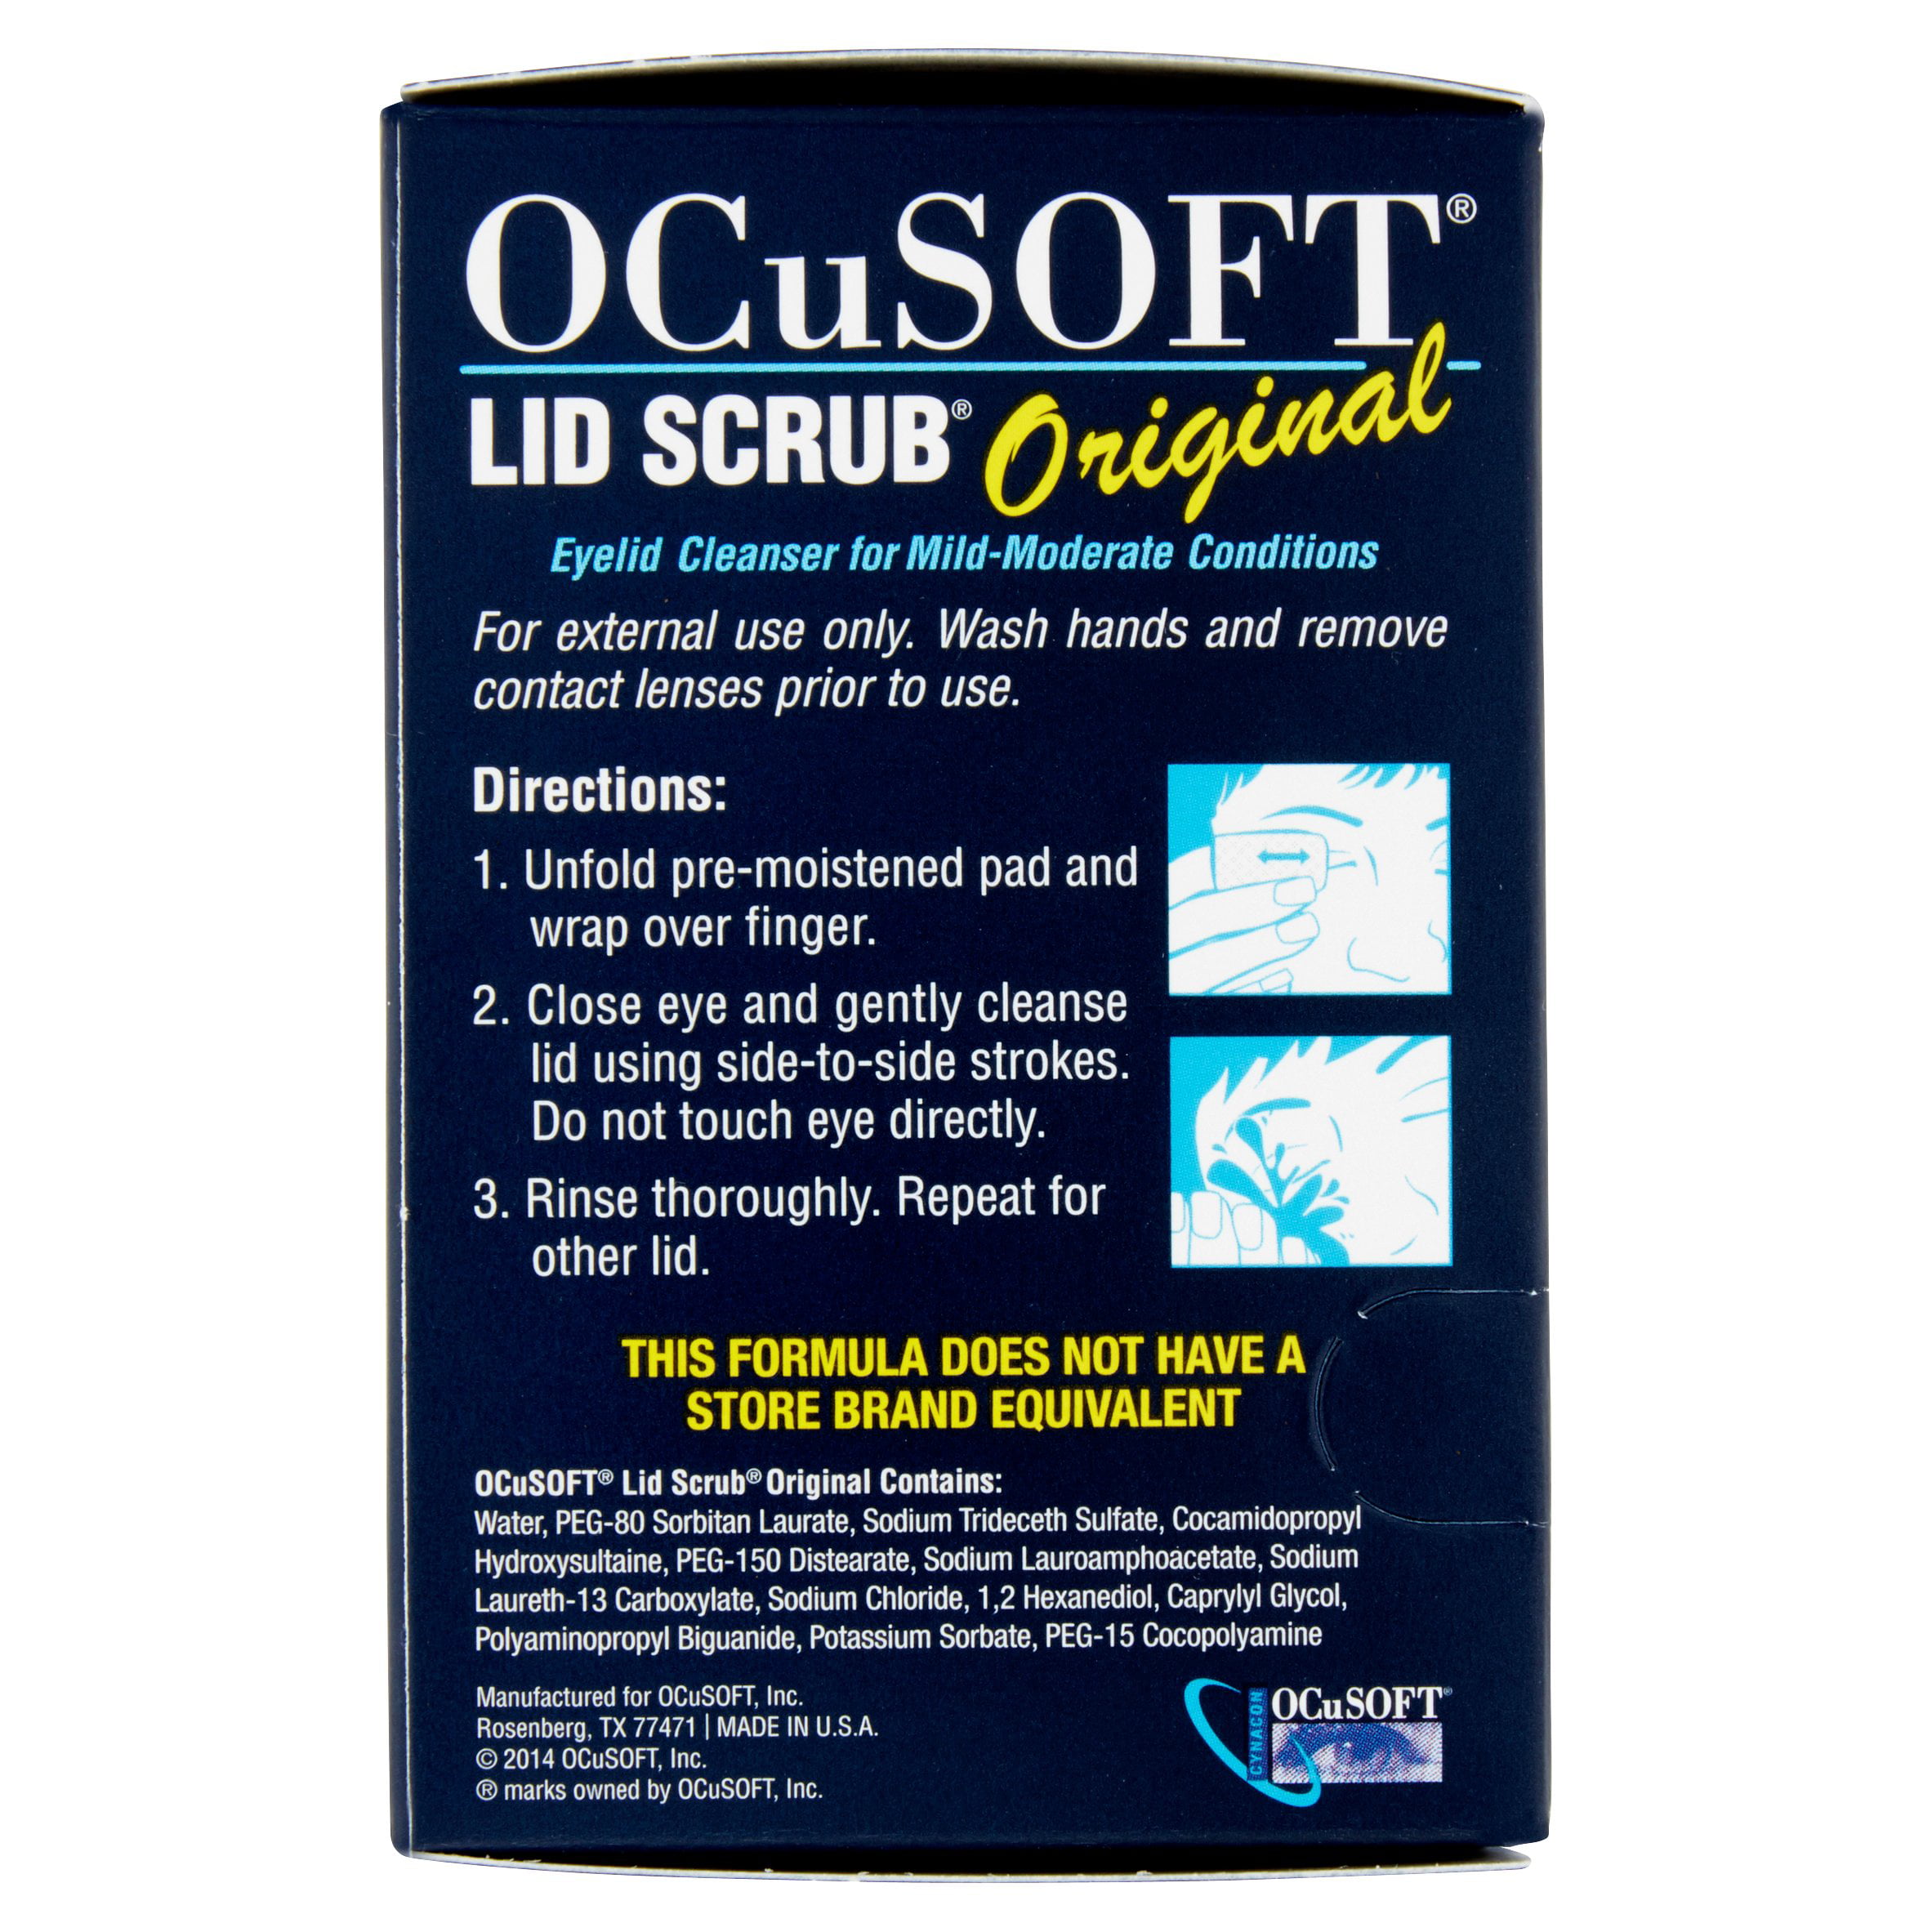 Ocusoft Lid Scrub Coupon 2019 facial scrub